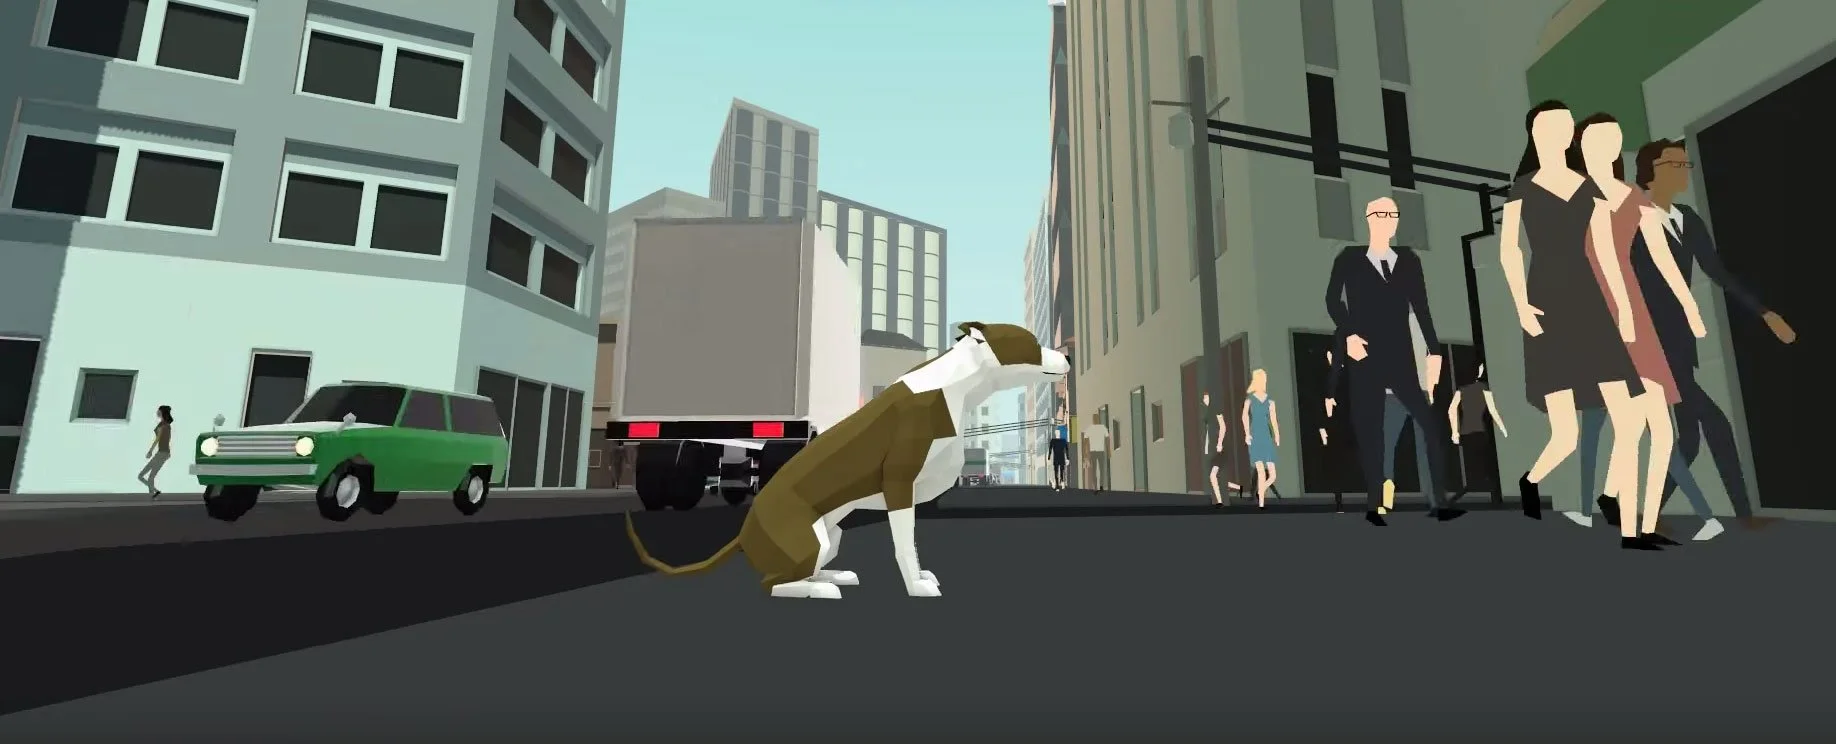 Home Free – правдивая игра о брошенной собаке – вышла на Kickstarter - фото 1